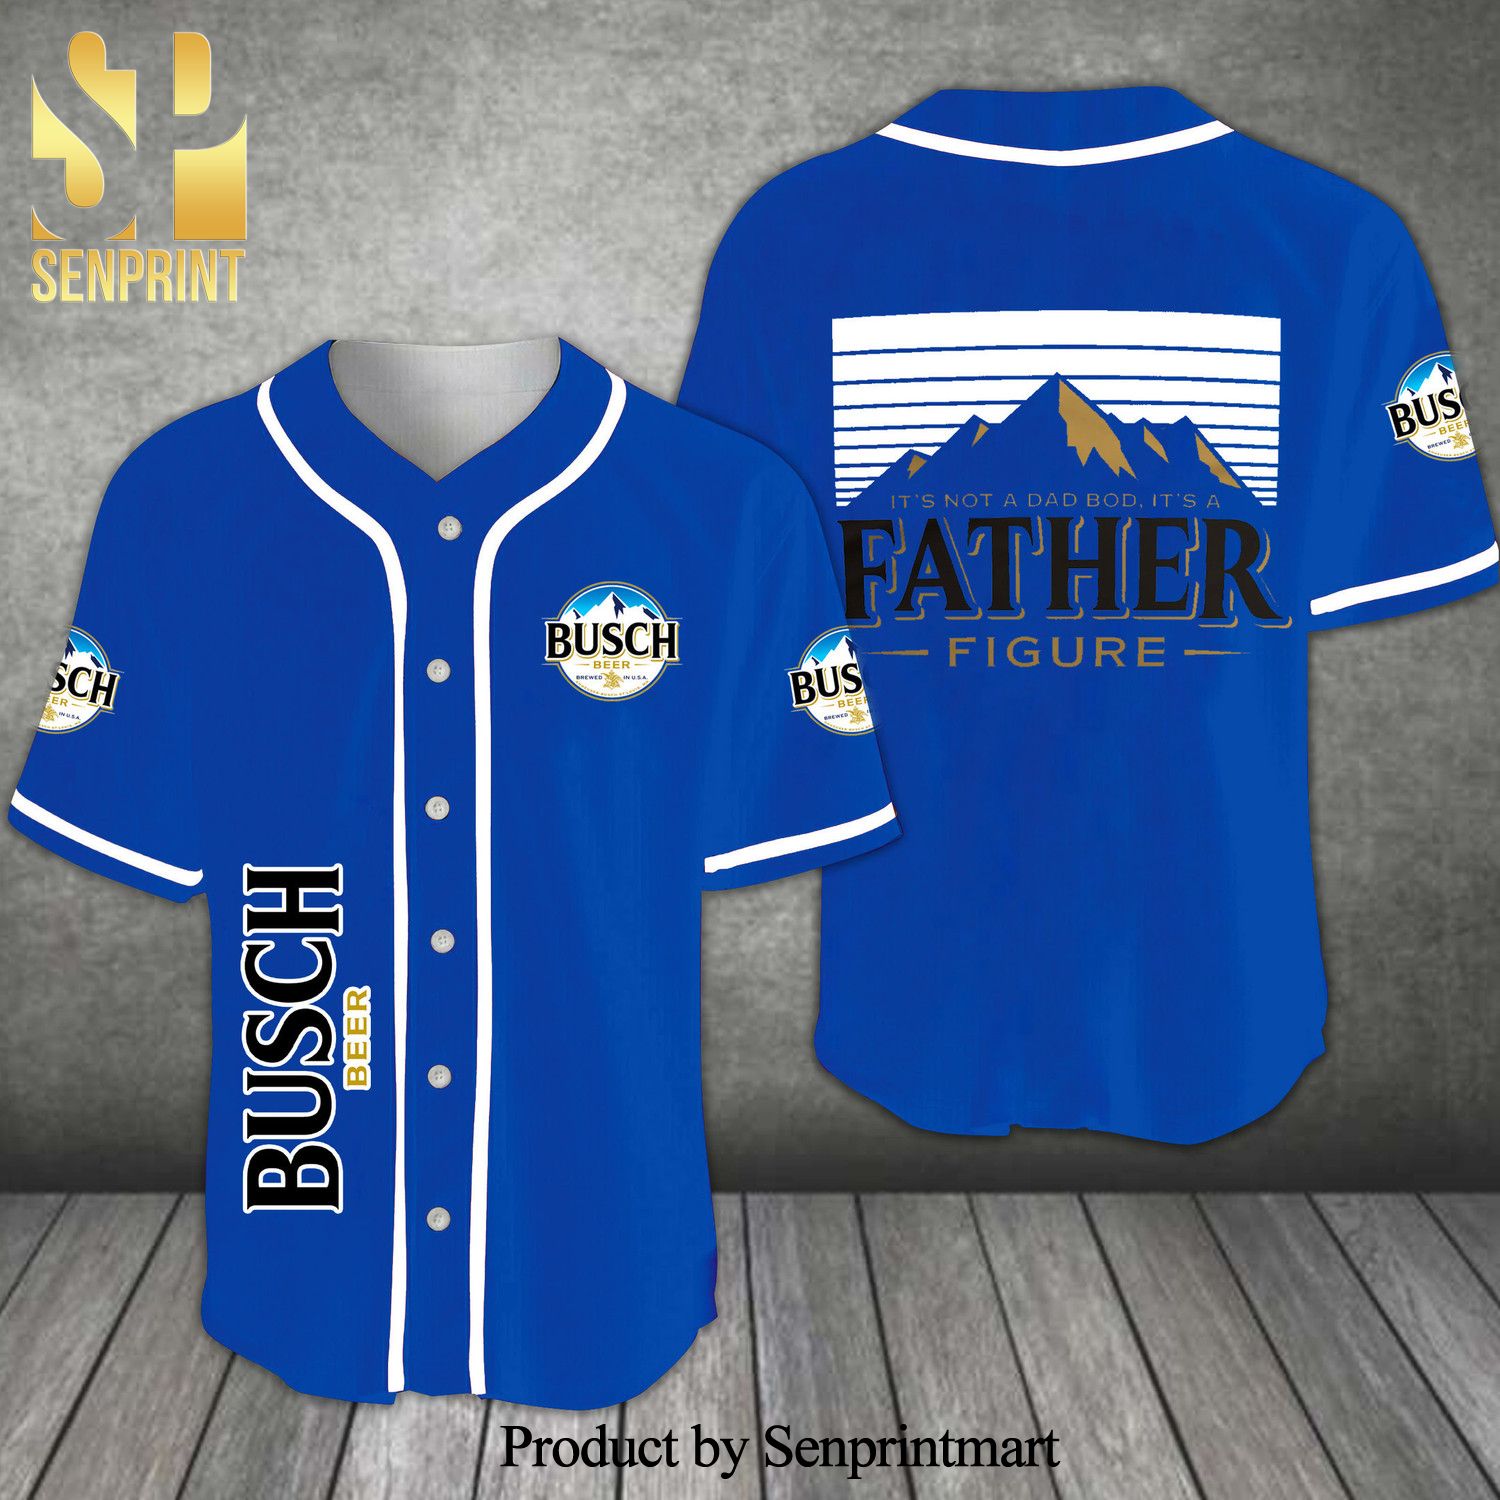 Busch Beer Father Figure All Over Print Unisex Baseball Jersey – Ocean Blue